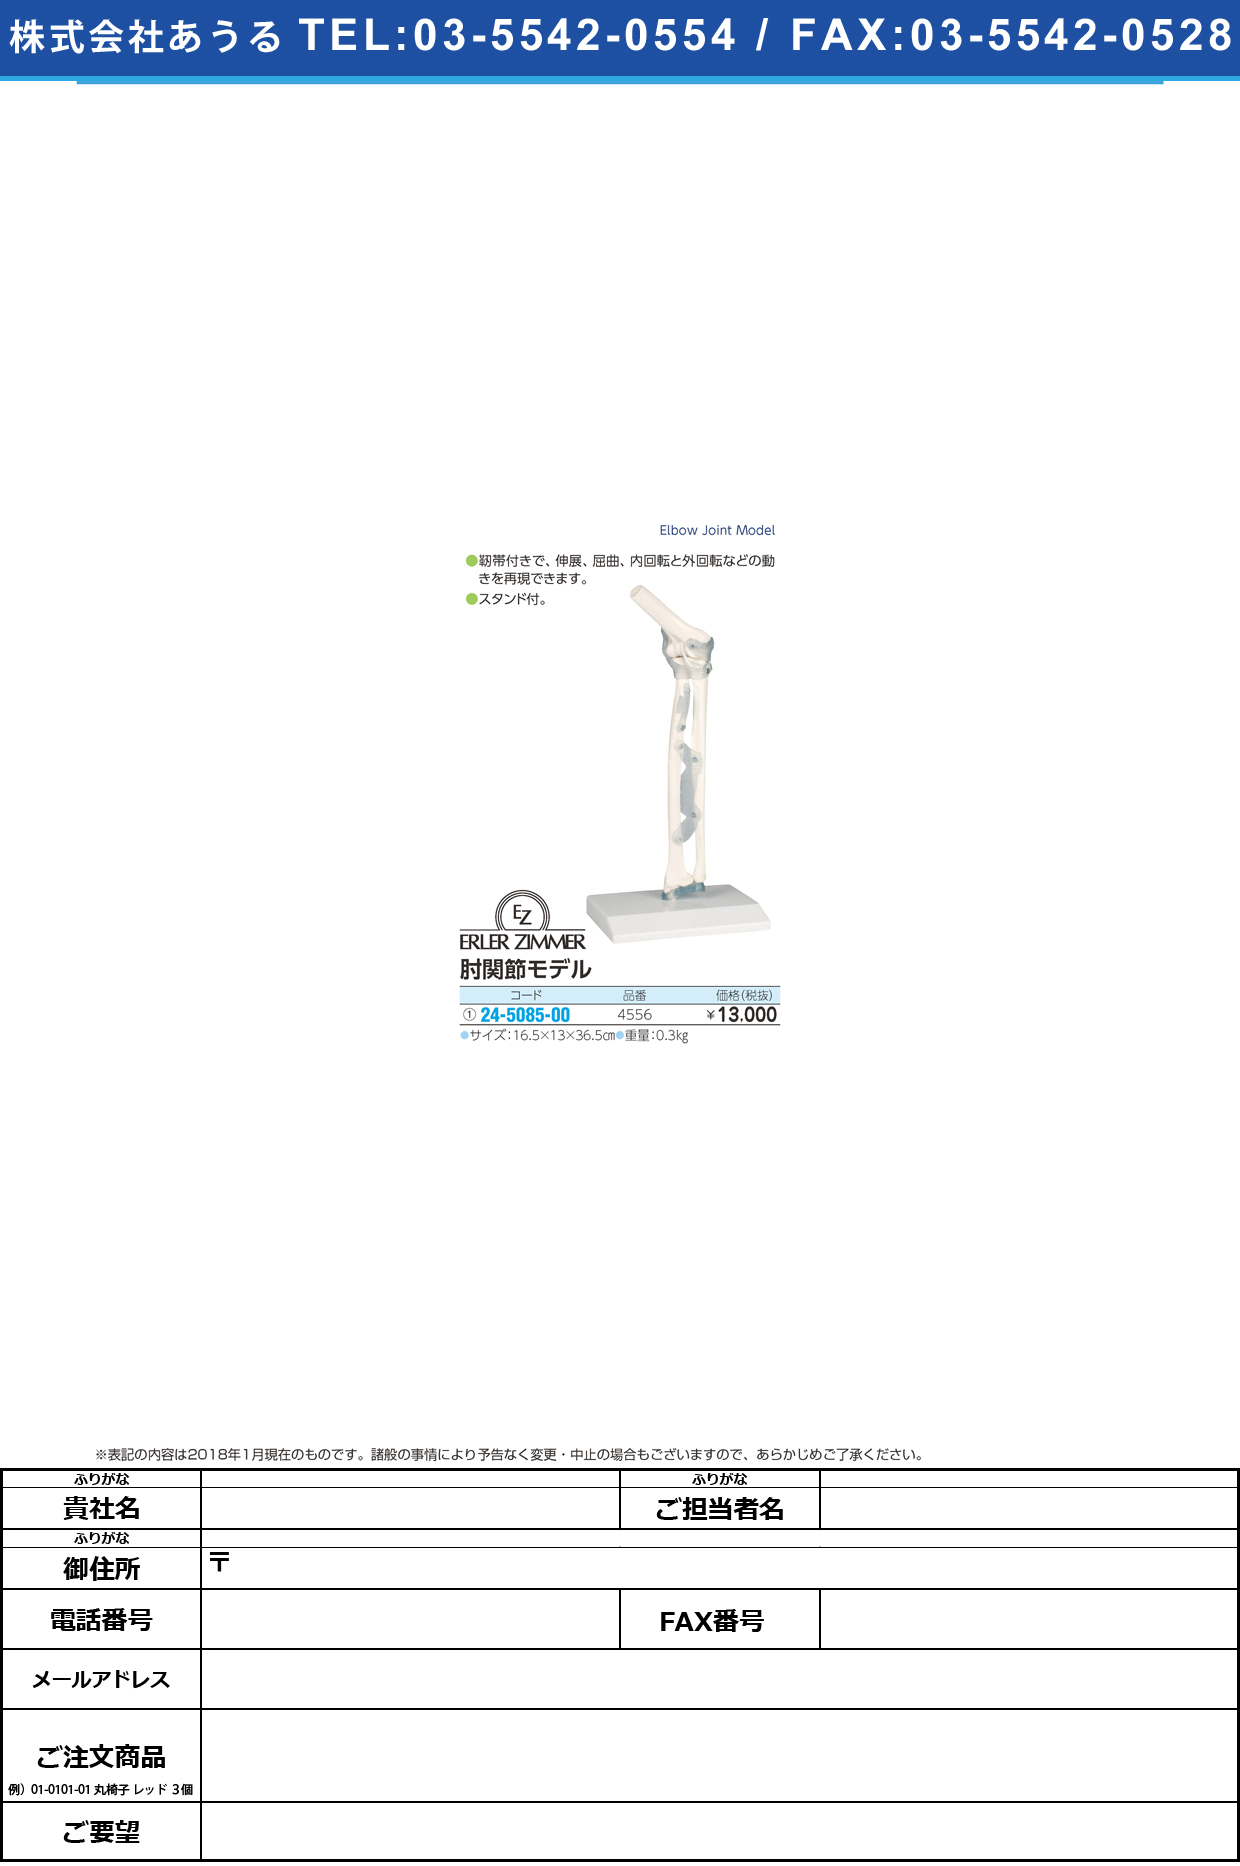 (24-5085-00)肘関節モデル 4556 ﾋｼﾞｶﾝｾﾂﾓﾃﾞﾙ(エルラージーマー社)【1個単位】【2018年カタログ商品】